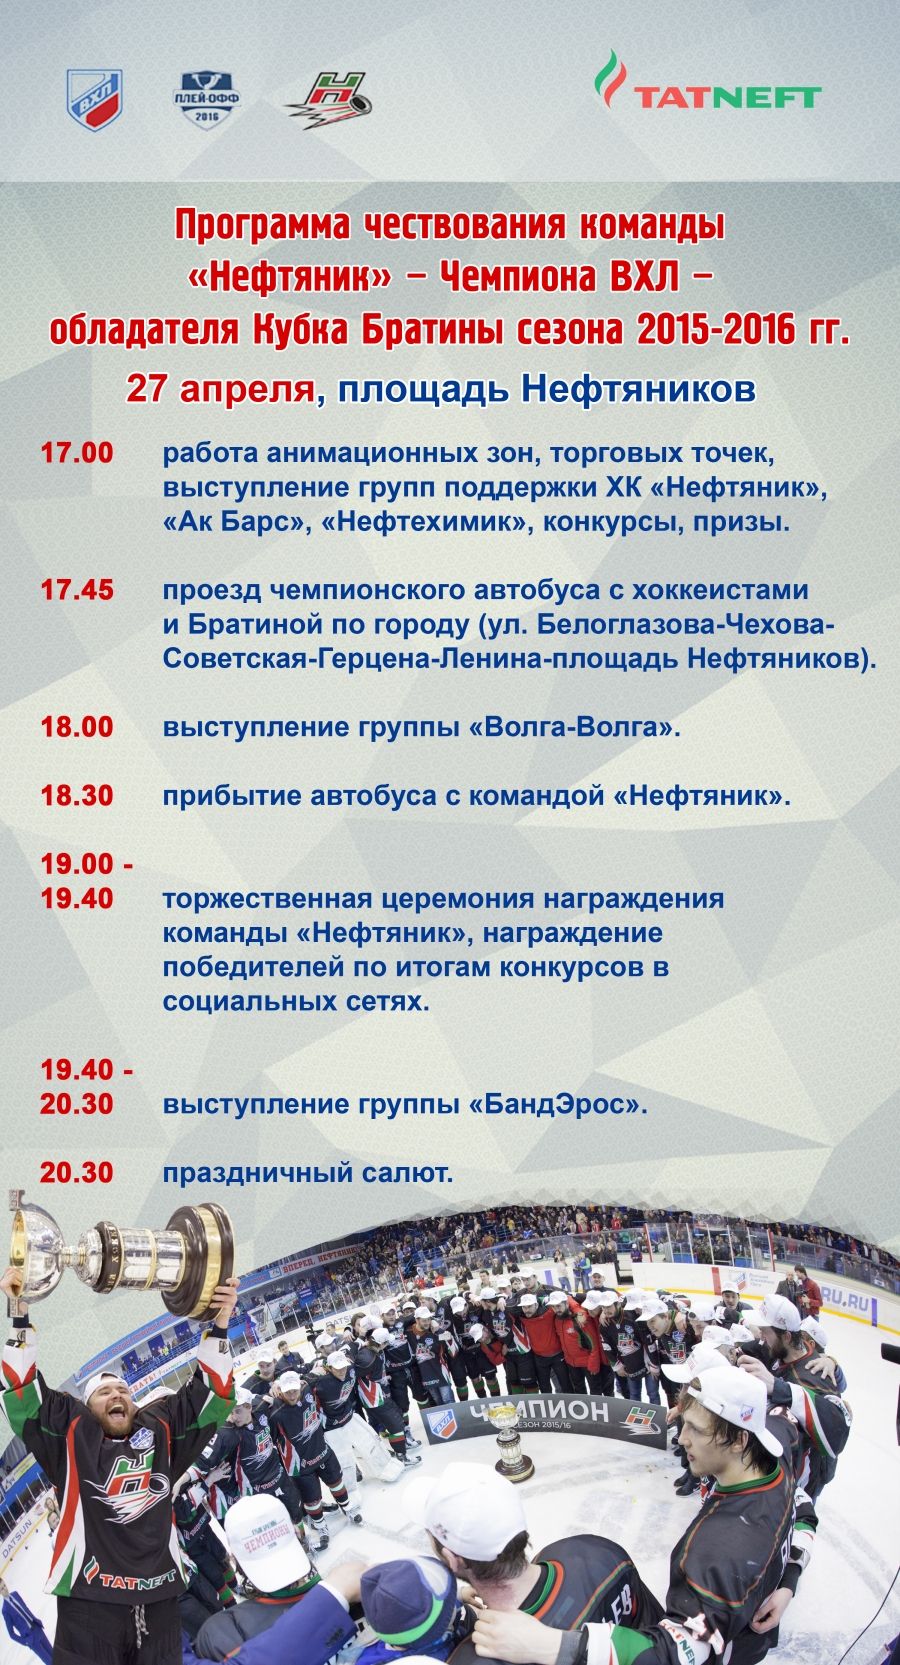 Большой праздник по поводу большой победы: в Альметьевске будут чествовать хоккеистов